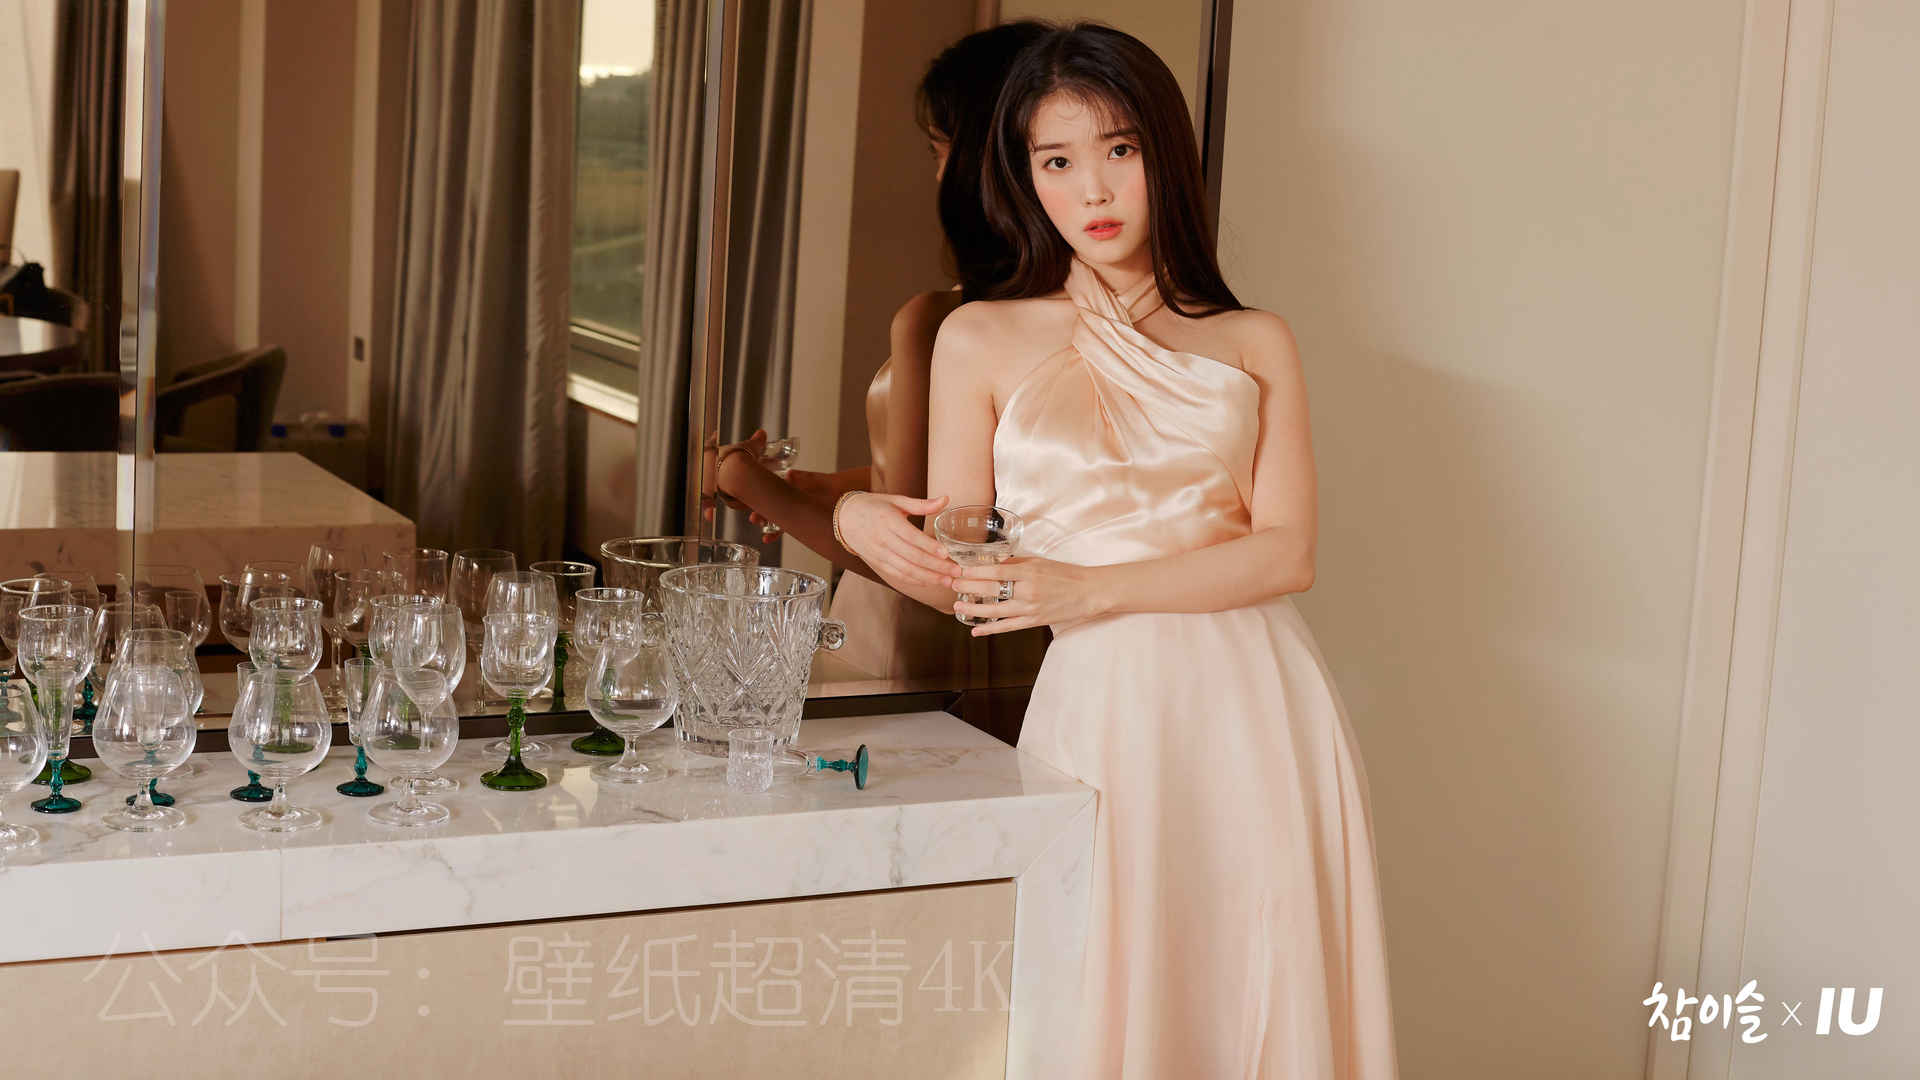 李知恩iu居家写真 玻璃杯 4k美女壁纸